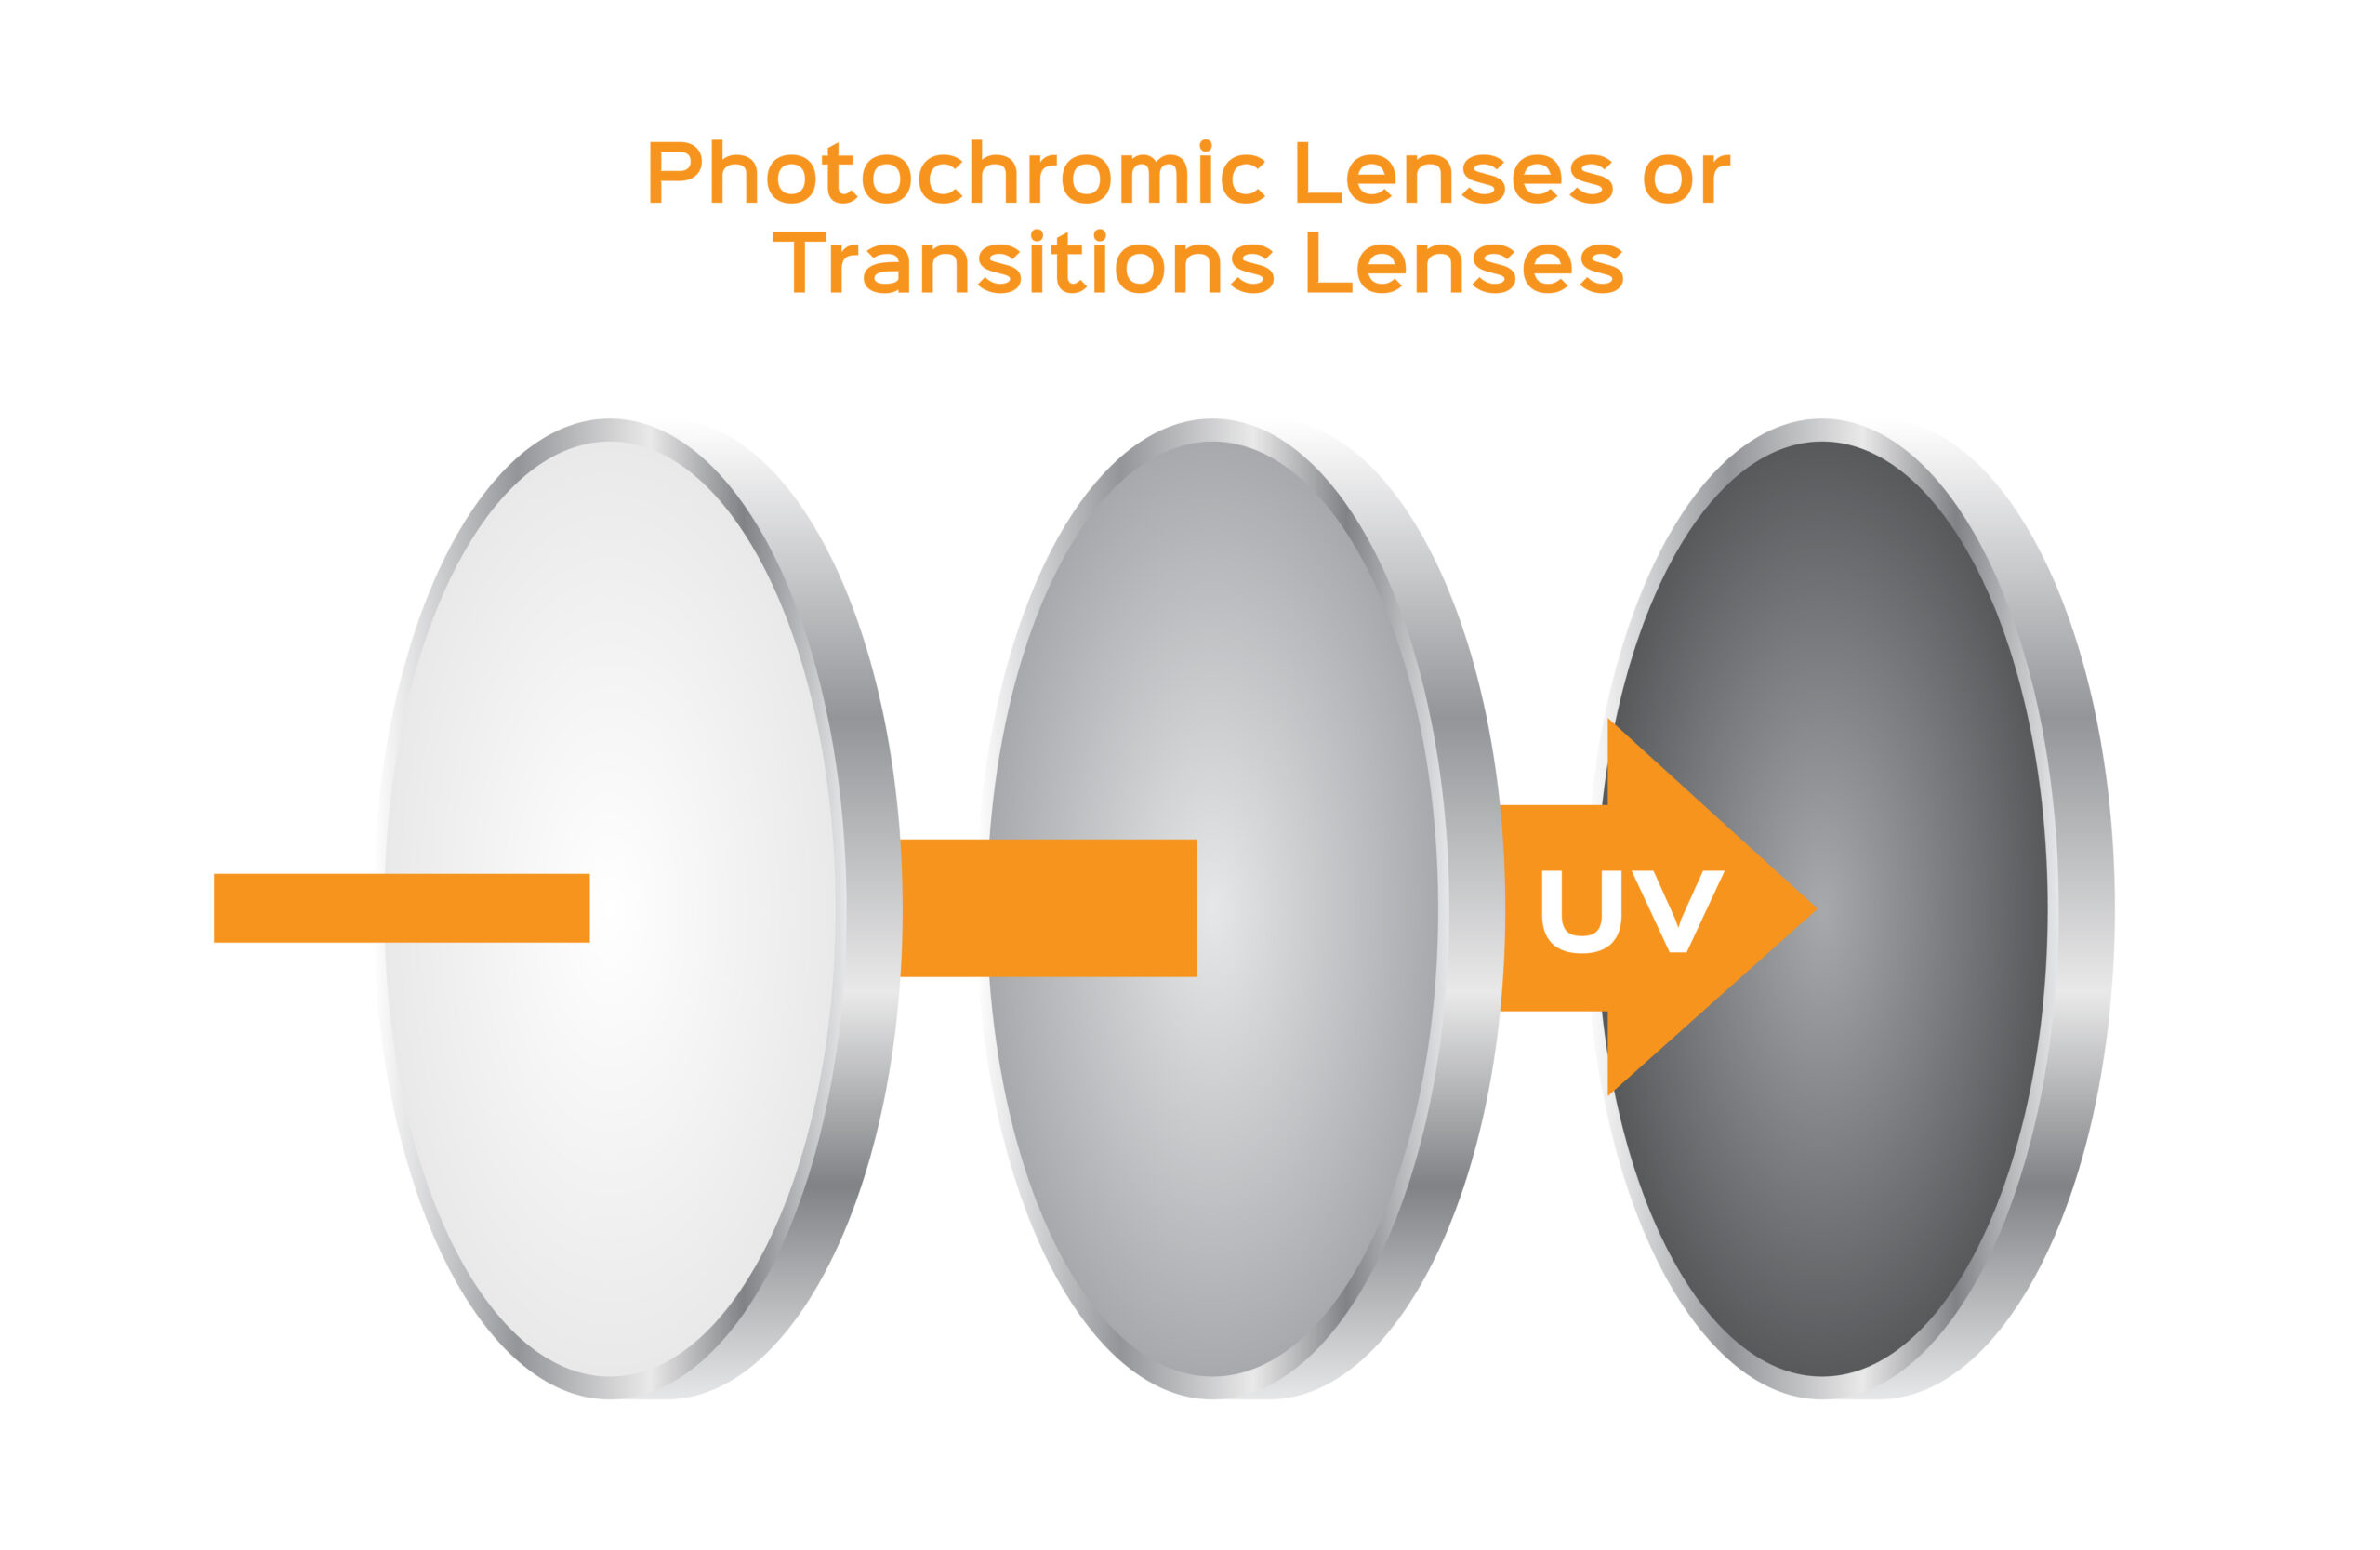 Photochromic lenses